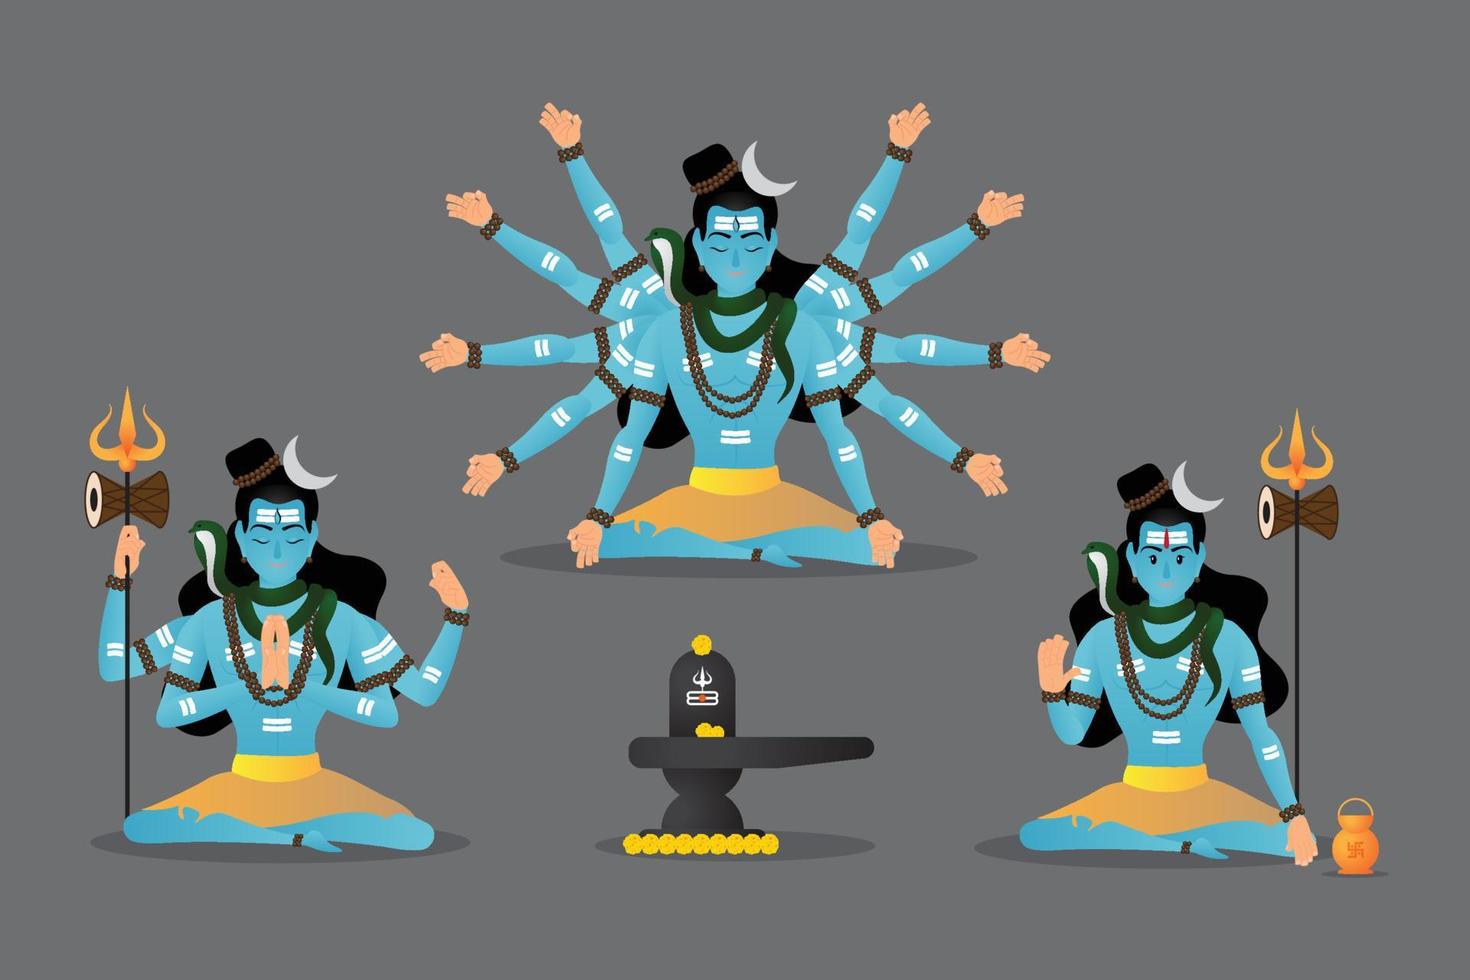 ilustración vectorial de feliz mahashivratri, señor shiva, shivratri vector